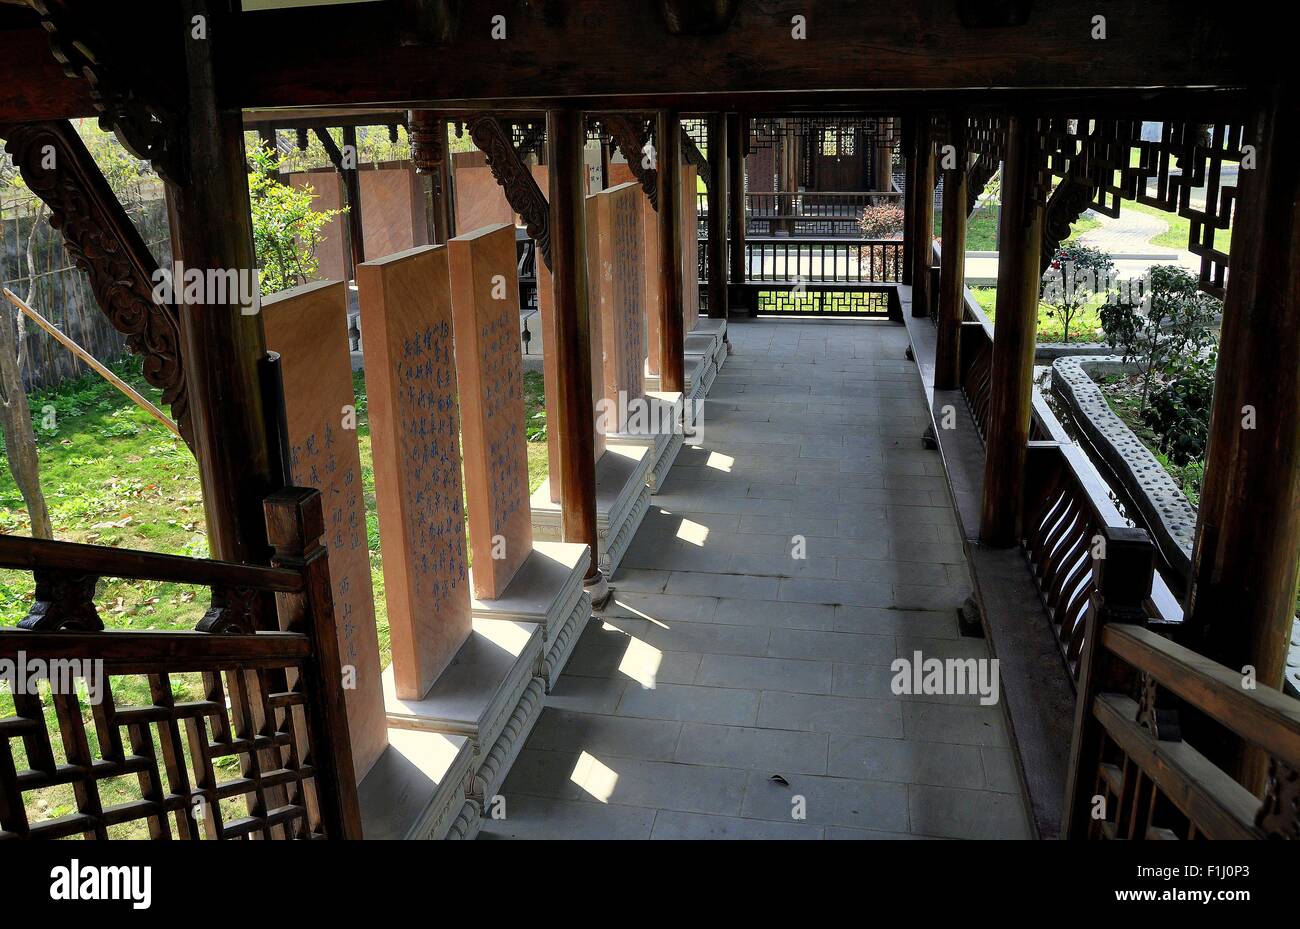 Pengzhou, Cina: galleria di legno con incisi sulle tavolette di pietra al generale Yin Chang Hang Casa sito storico Foto Stock